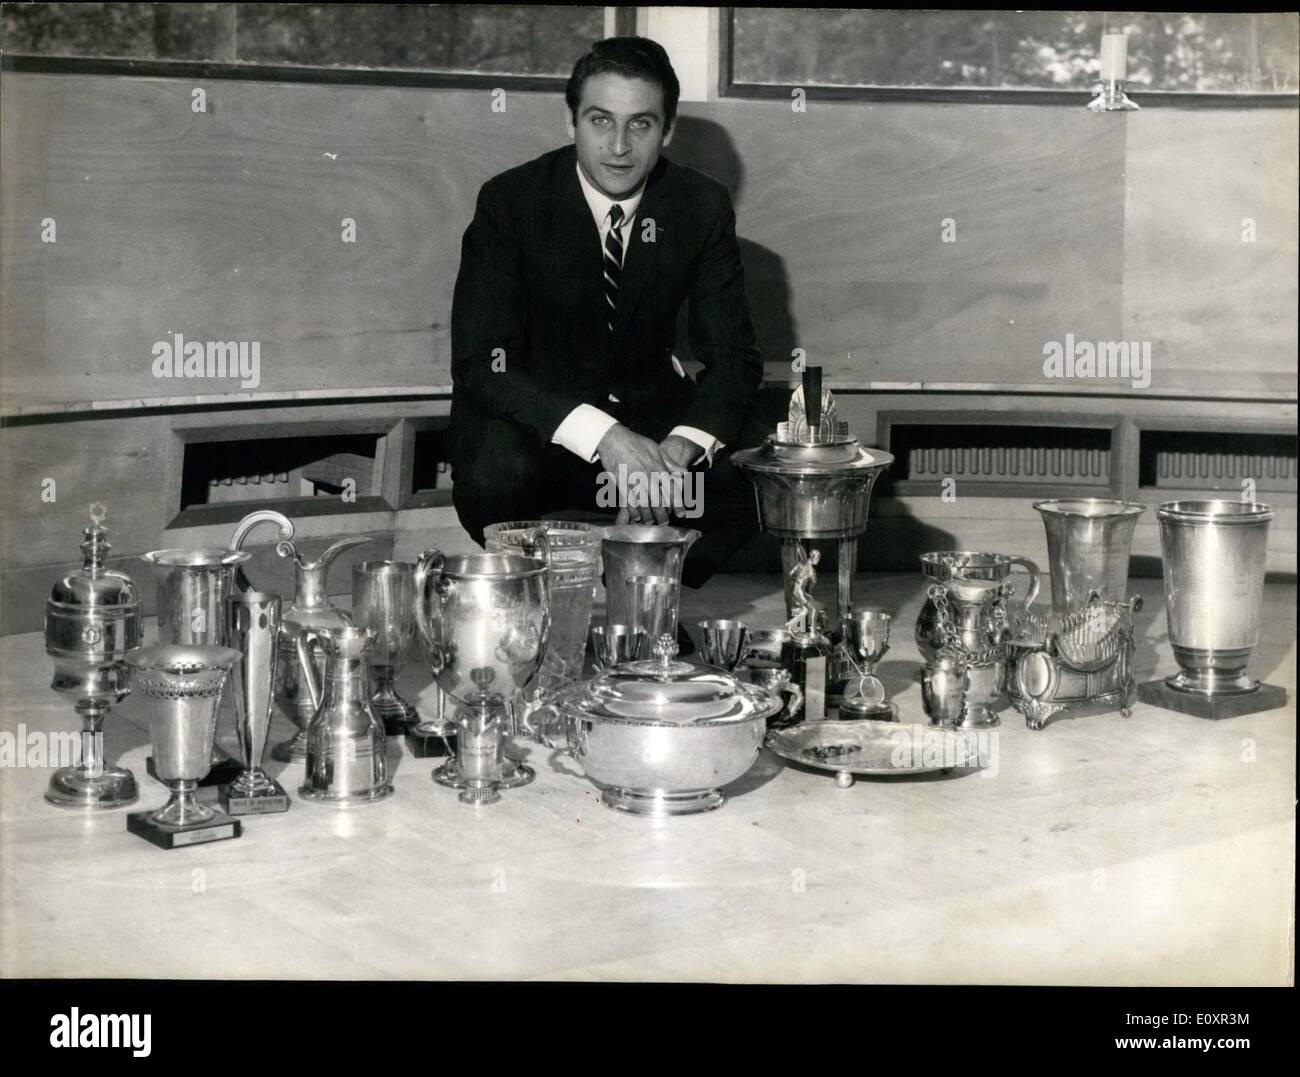 10 octobre 1967 - Pierre Darmon : 8 fois champion de France : en dix ans, Pierre  Darmon, France's top champion de tennis, a marqué Photo Stock - Alamy